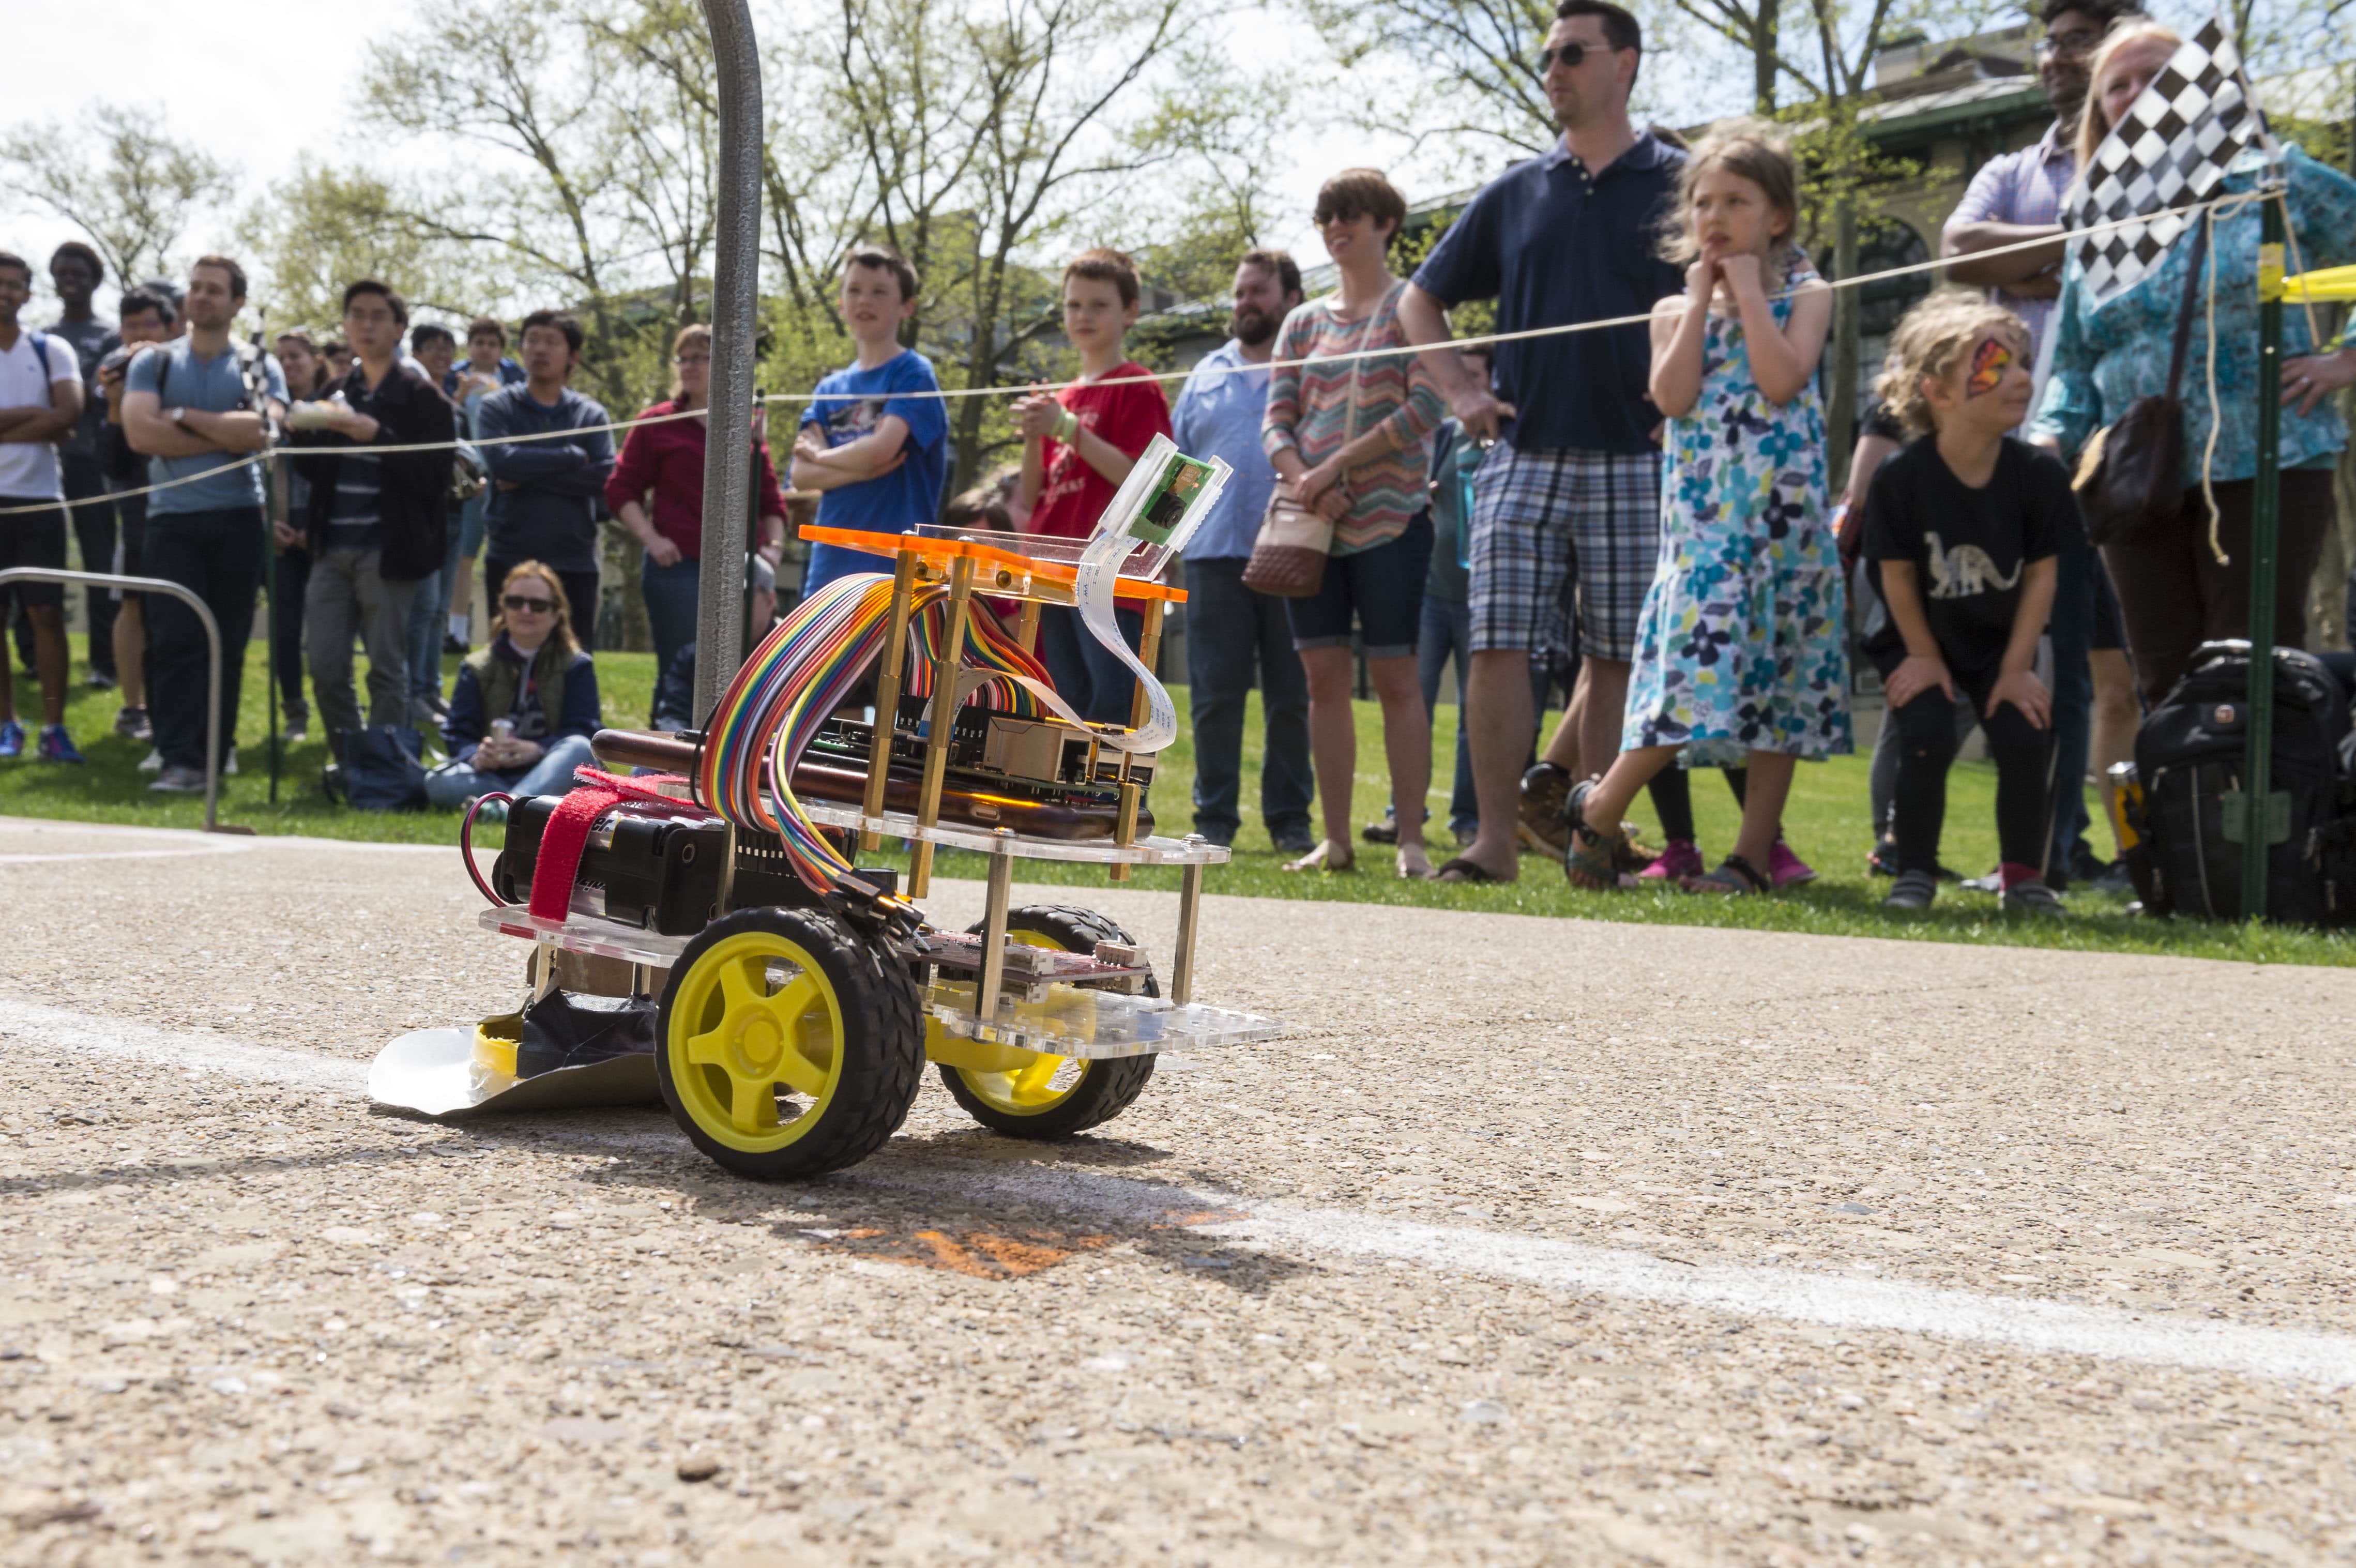 a mobile robot maneuvers the course